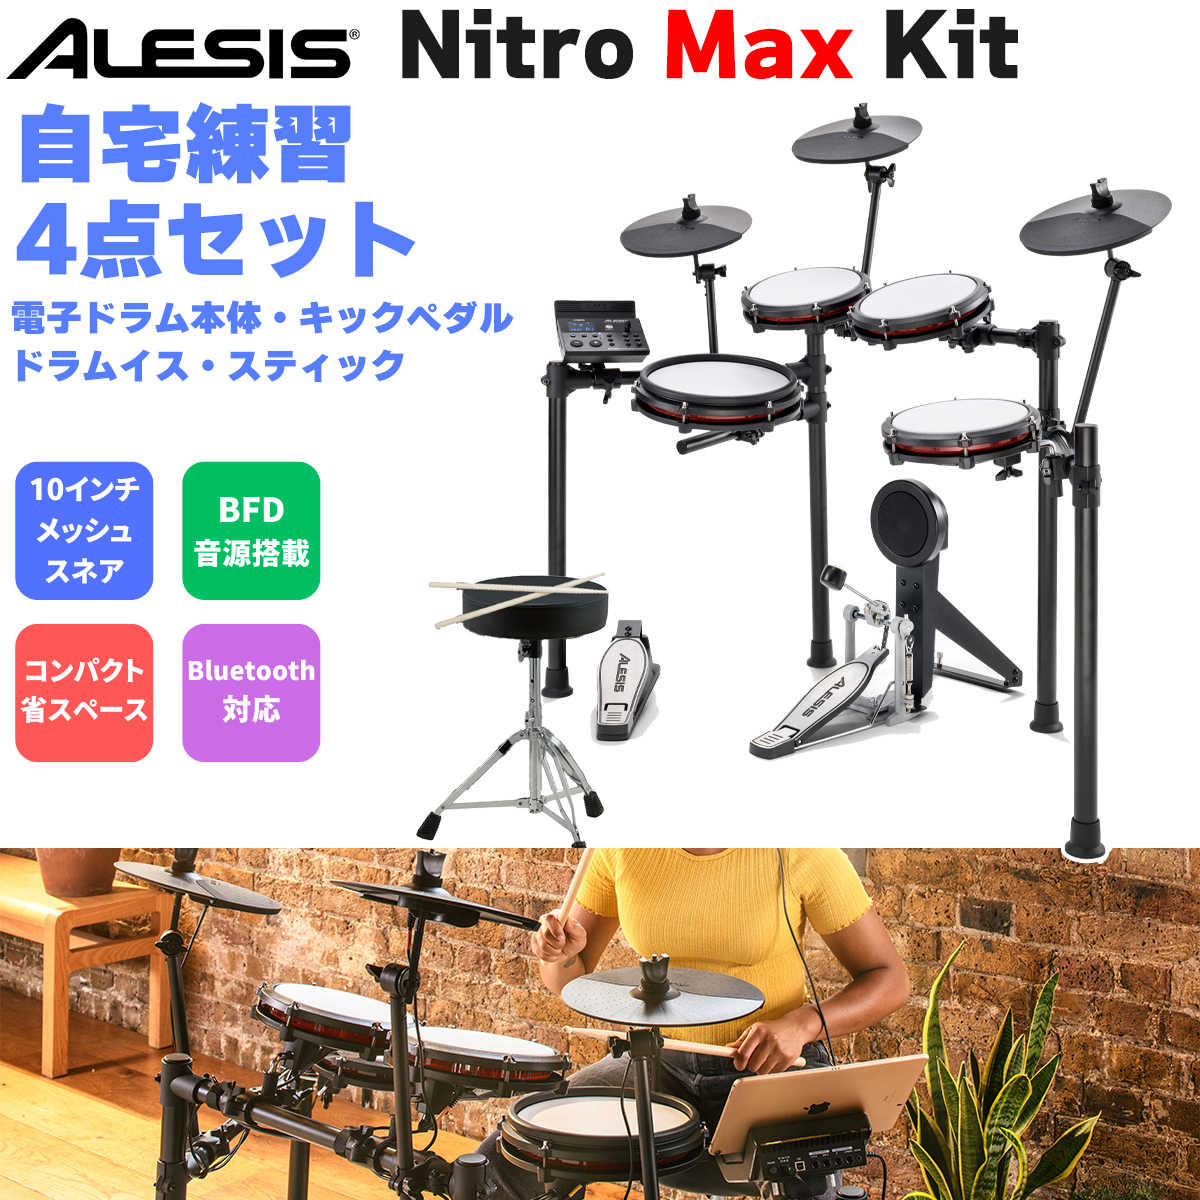 ALESIS アレシス Nitro Max Kit 自宅練習4点セット 電子ドラム オールメッシュパッド 10インチスネア BFD音源搭載